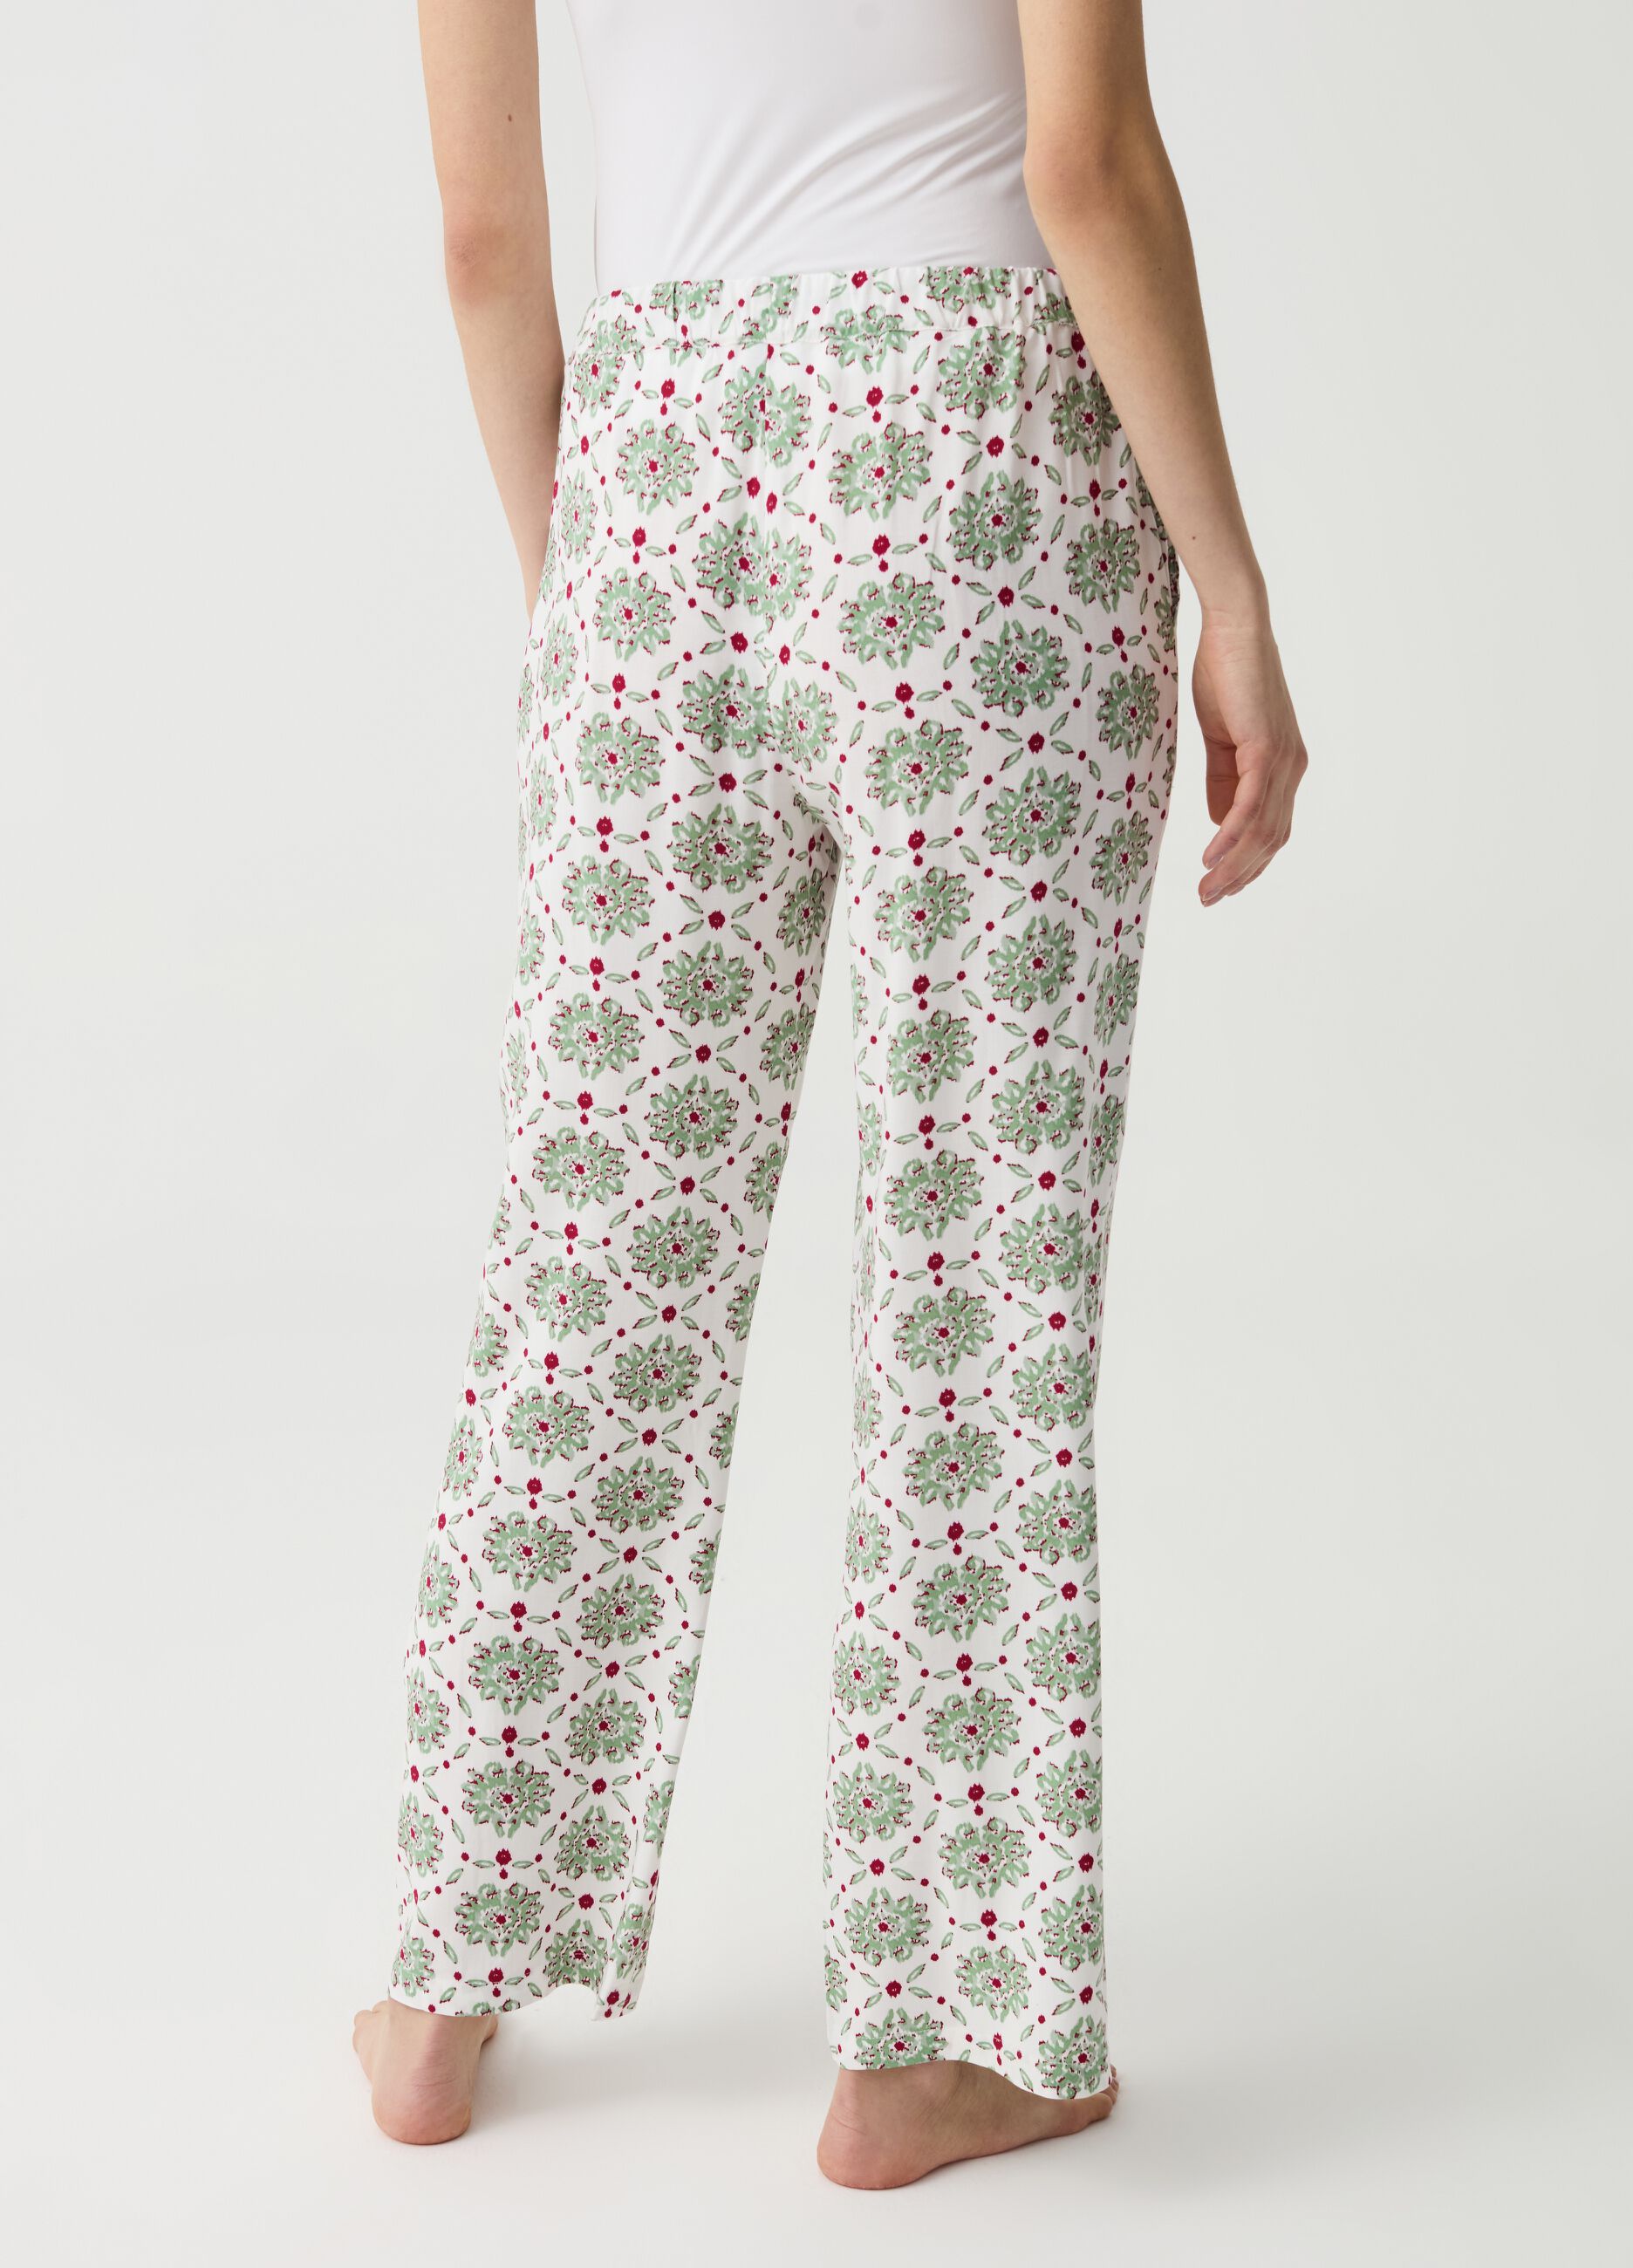 Pantalón pijama con cordón y borlas